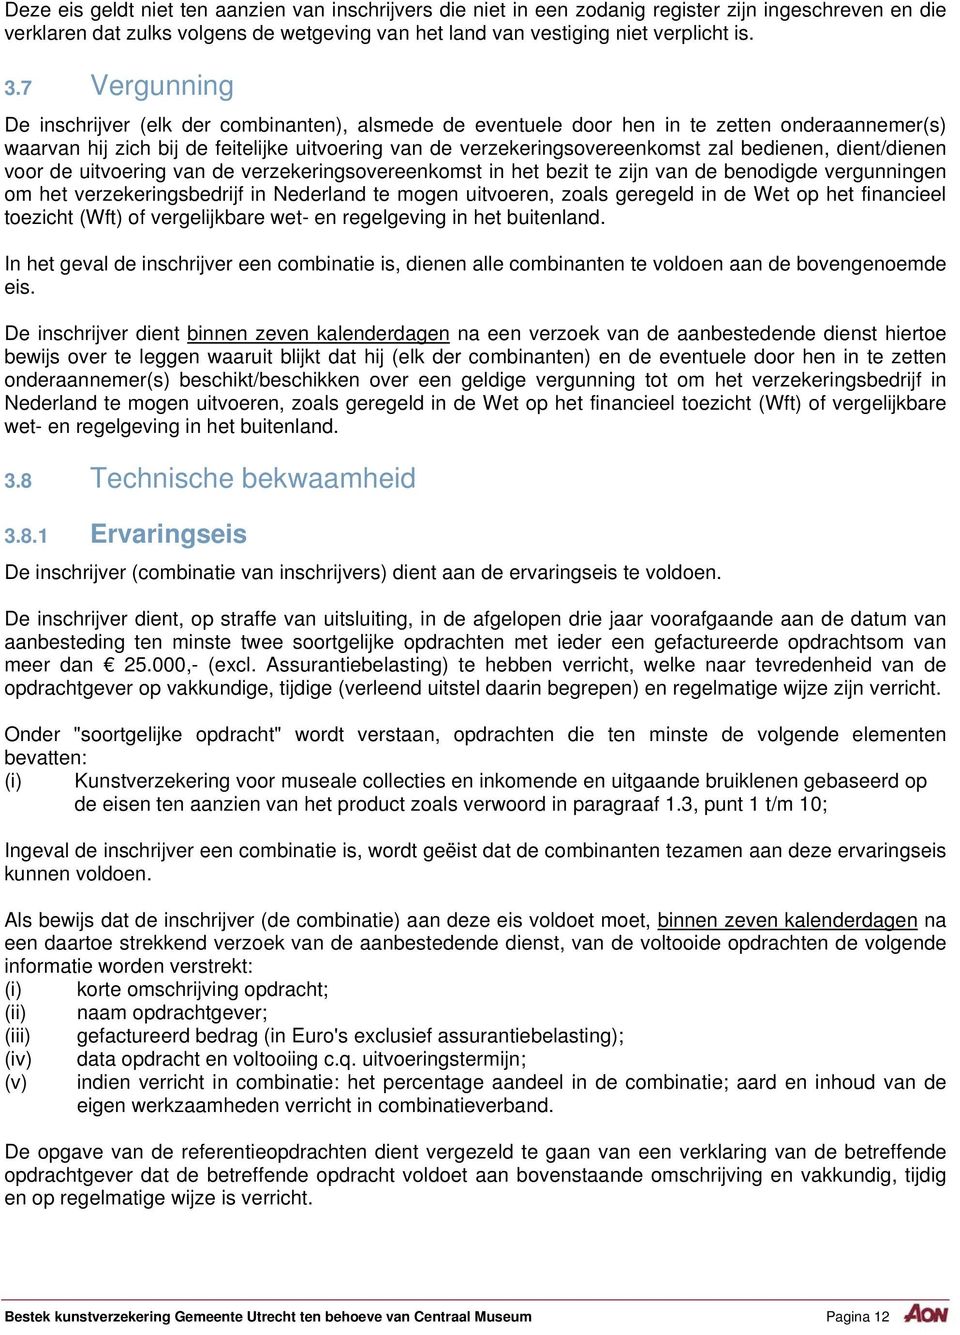 bedienen, dient/dienen voor de uitvoering van de verzekeringsovereenkomst in het bezit te zijn van de benodigde vergunningen om het verzekeringsbedrijf in Nederland te mogen uitvoeren, zoals geregeld